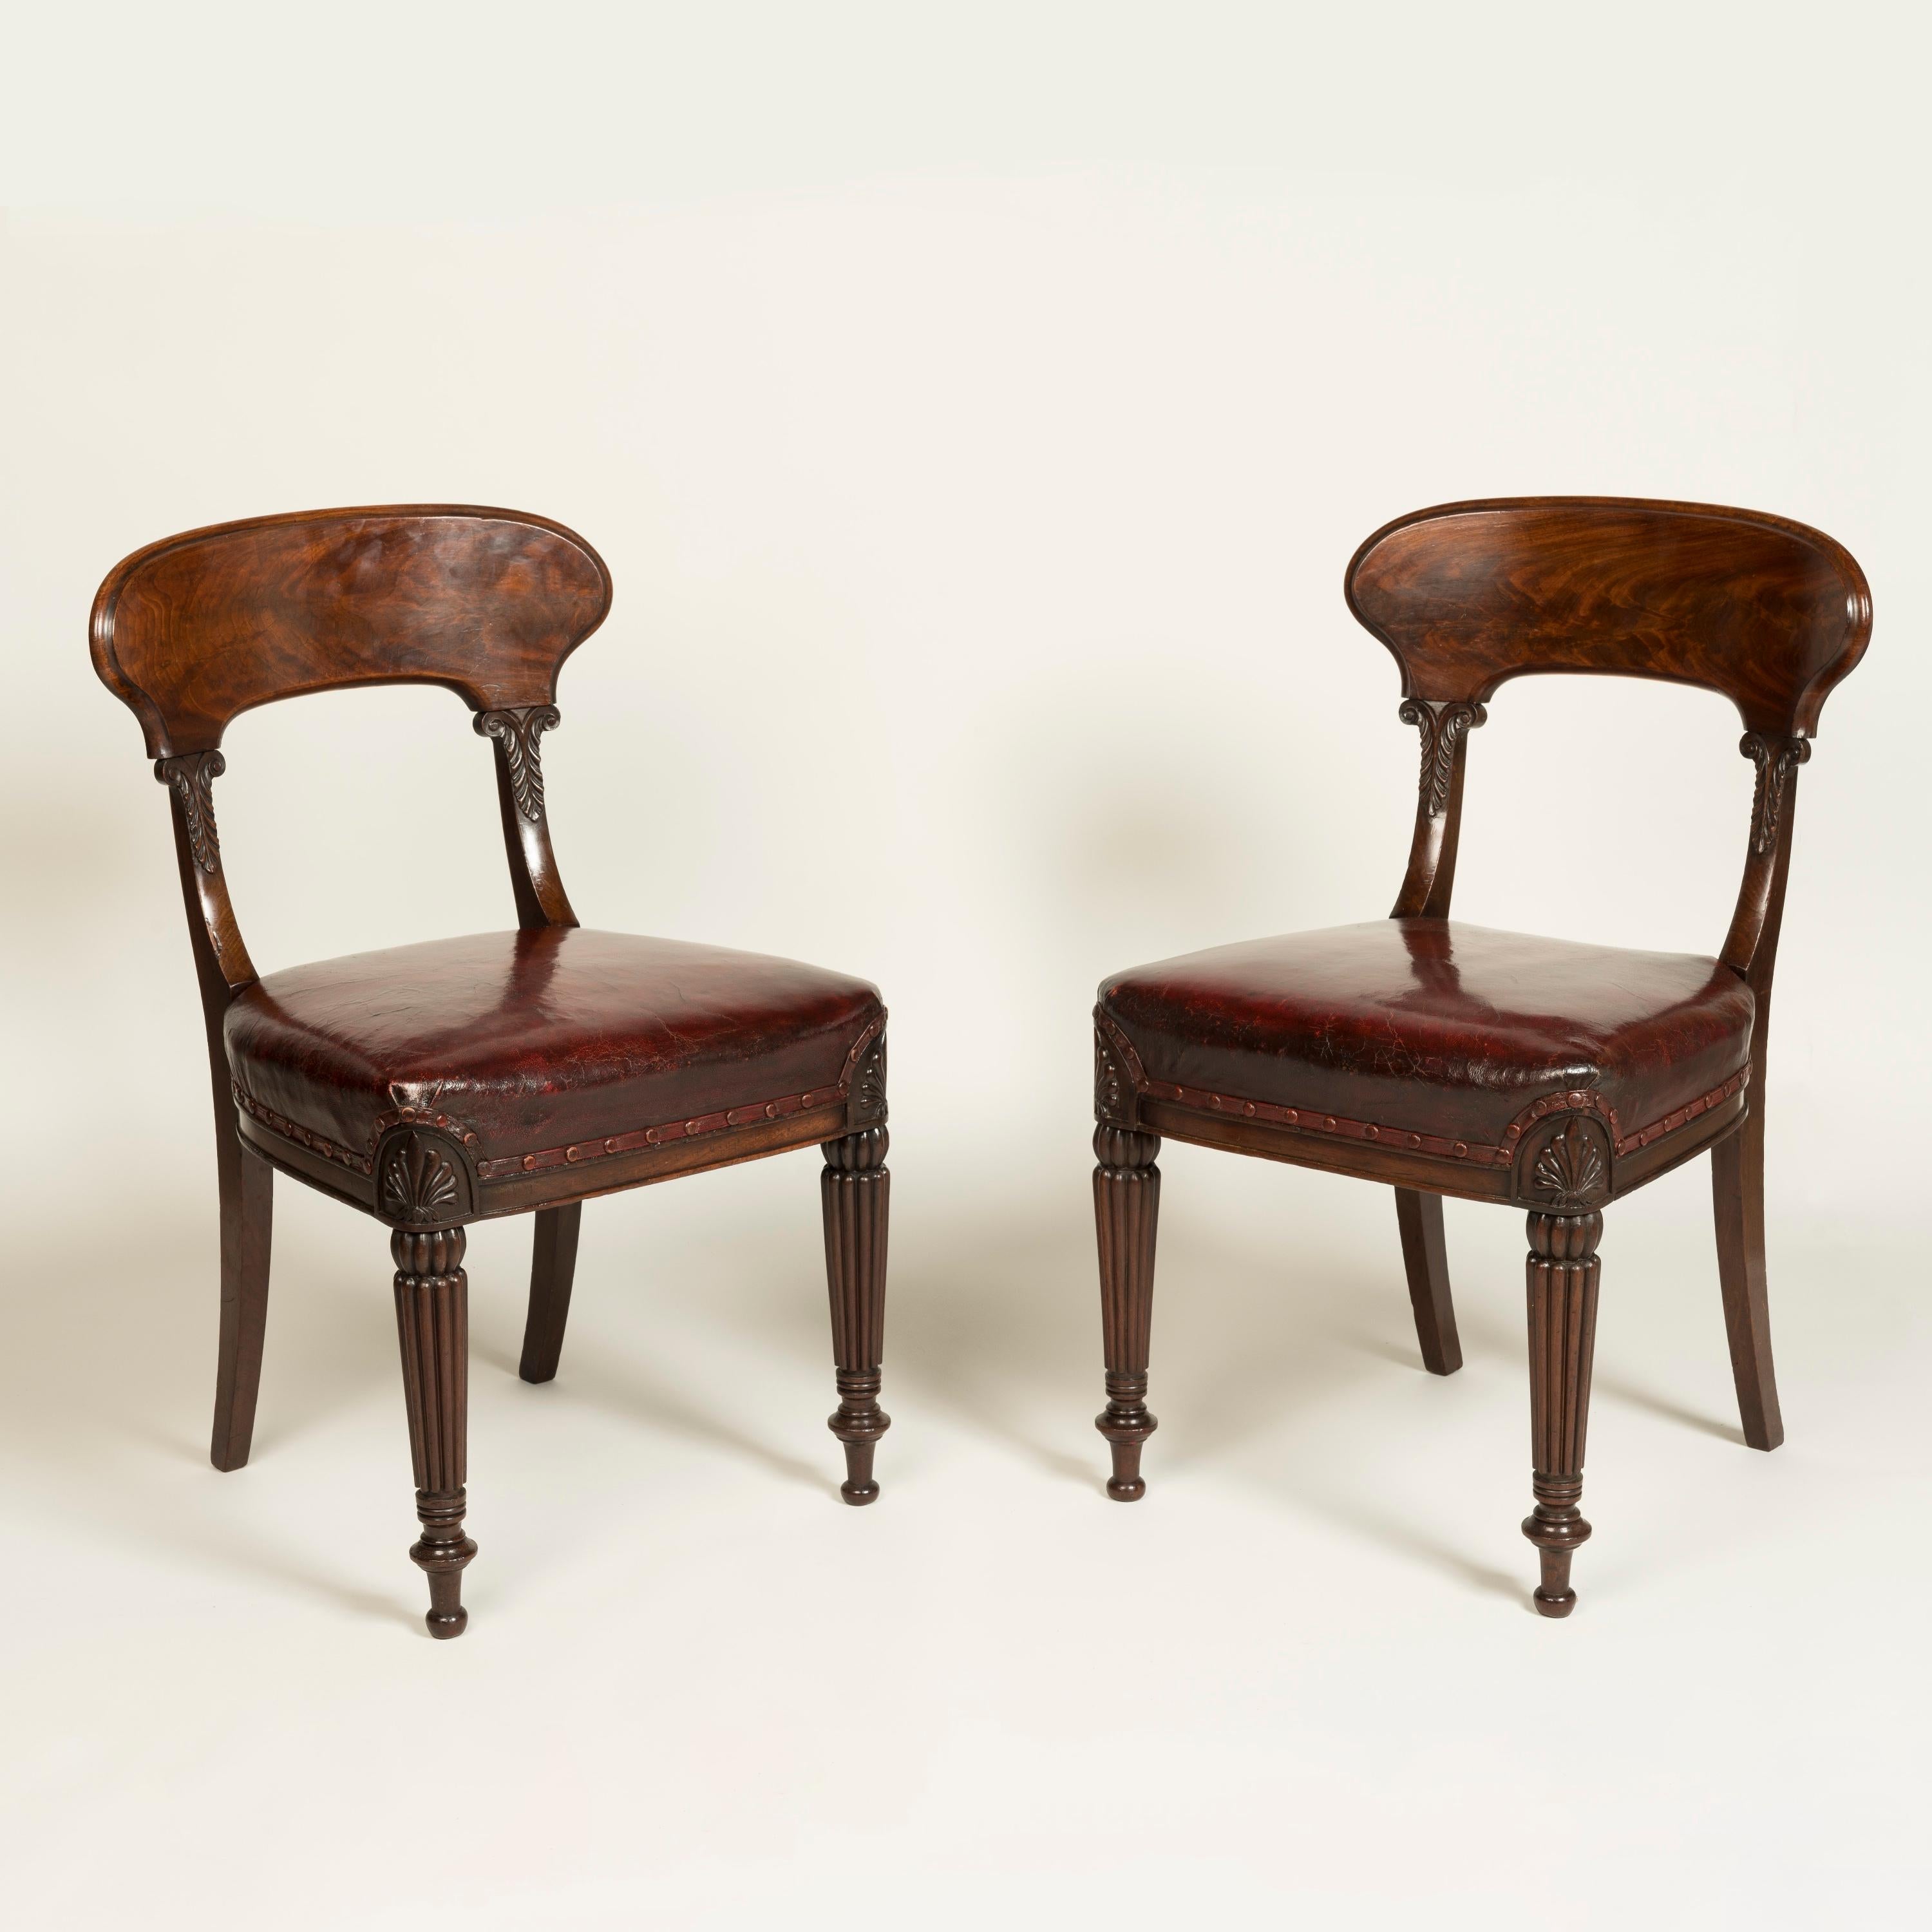 Un bel ensemble de douze chaises de salle à manger George IV
Attribué à Gillows of London & Lancaster

Construit en acajou cubain flammé, avec des détails sculptés à la main ; reposant sur des pieds avant fuselés, tournés et cannelés, chapeautés par